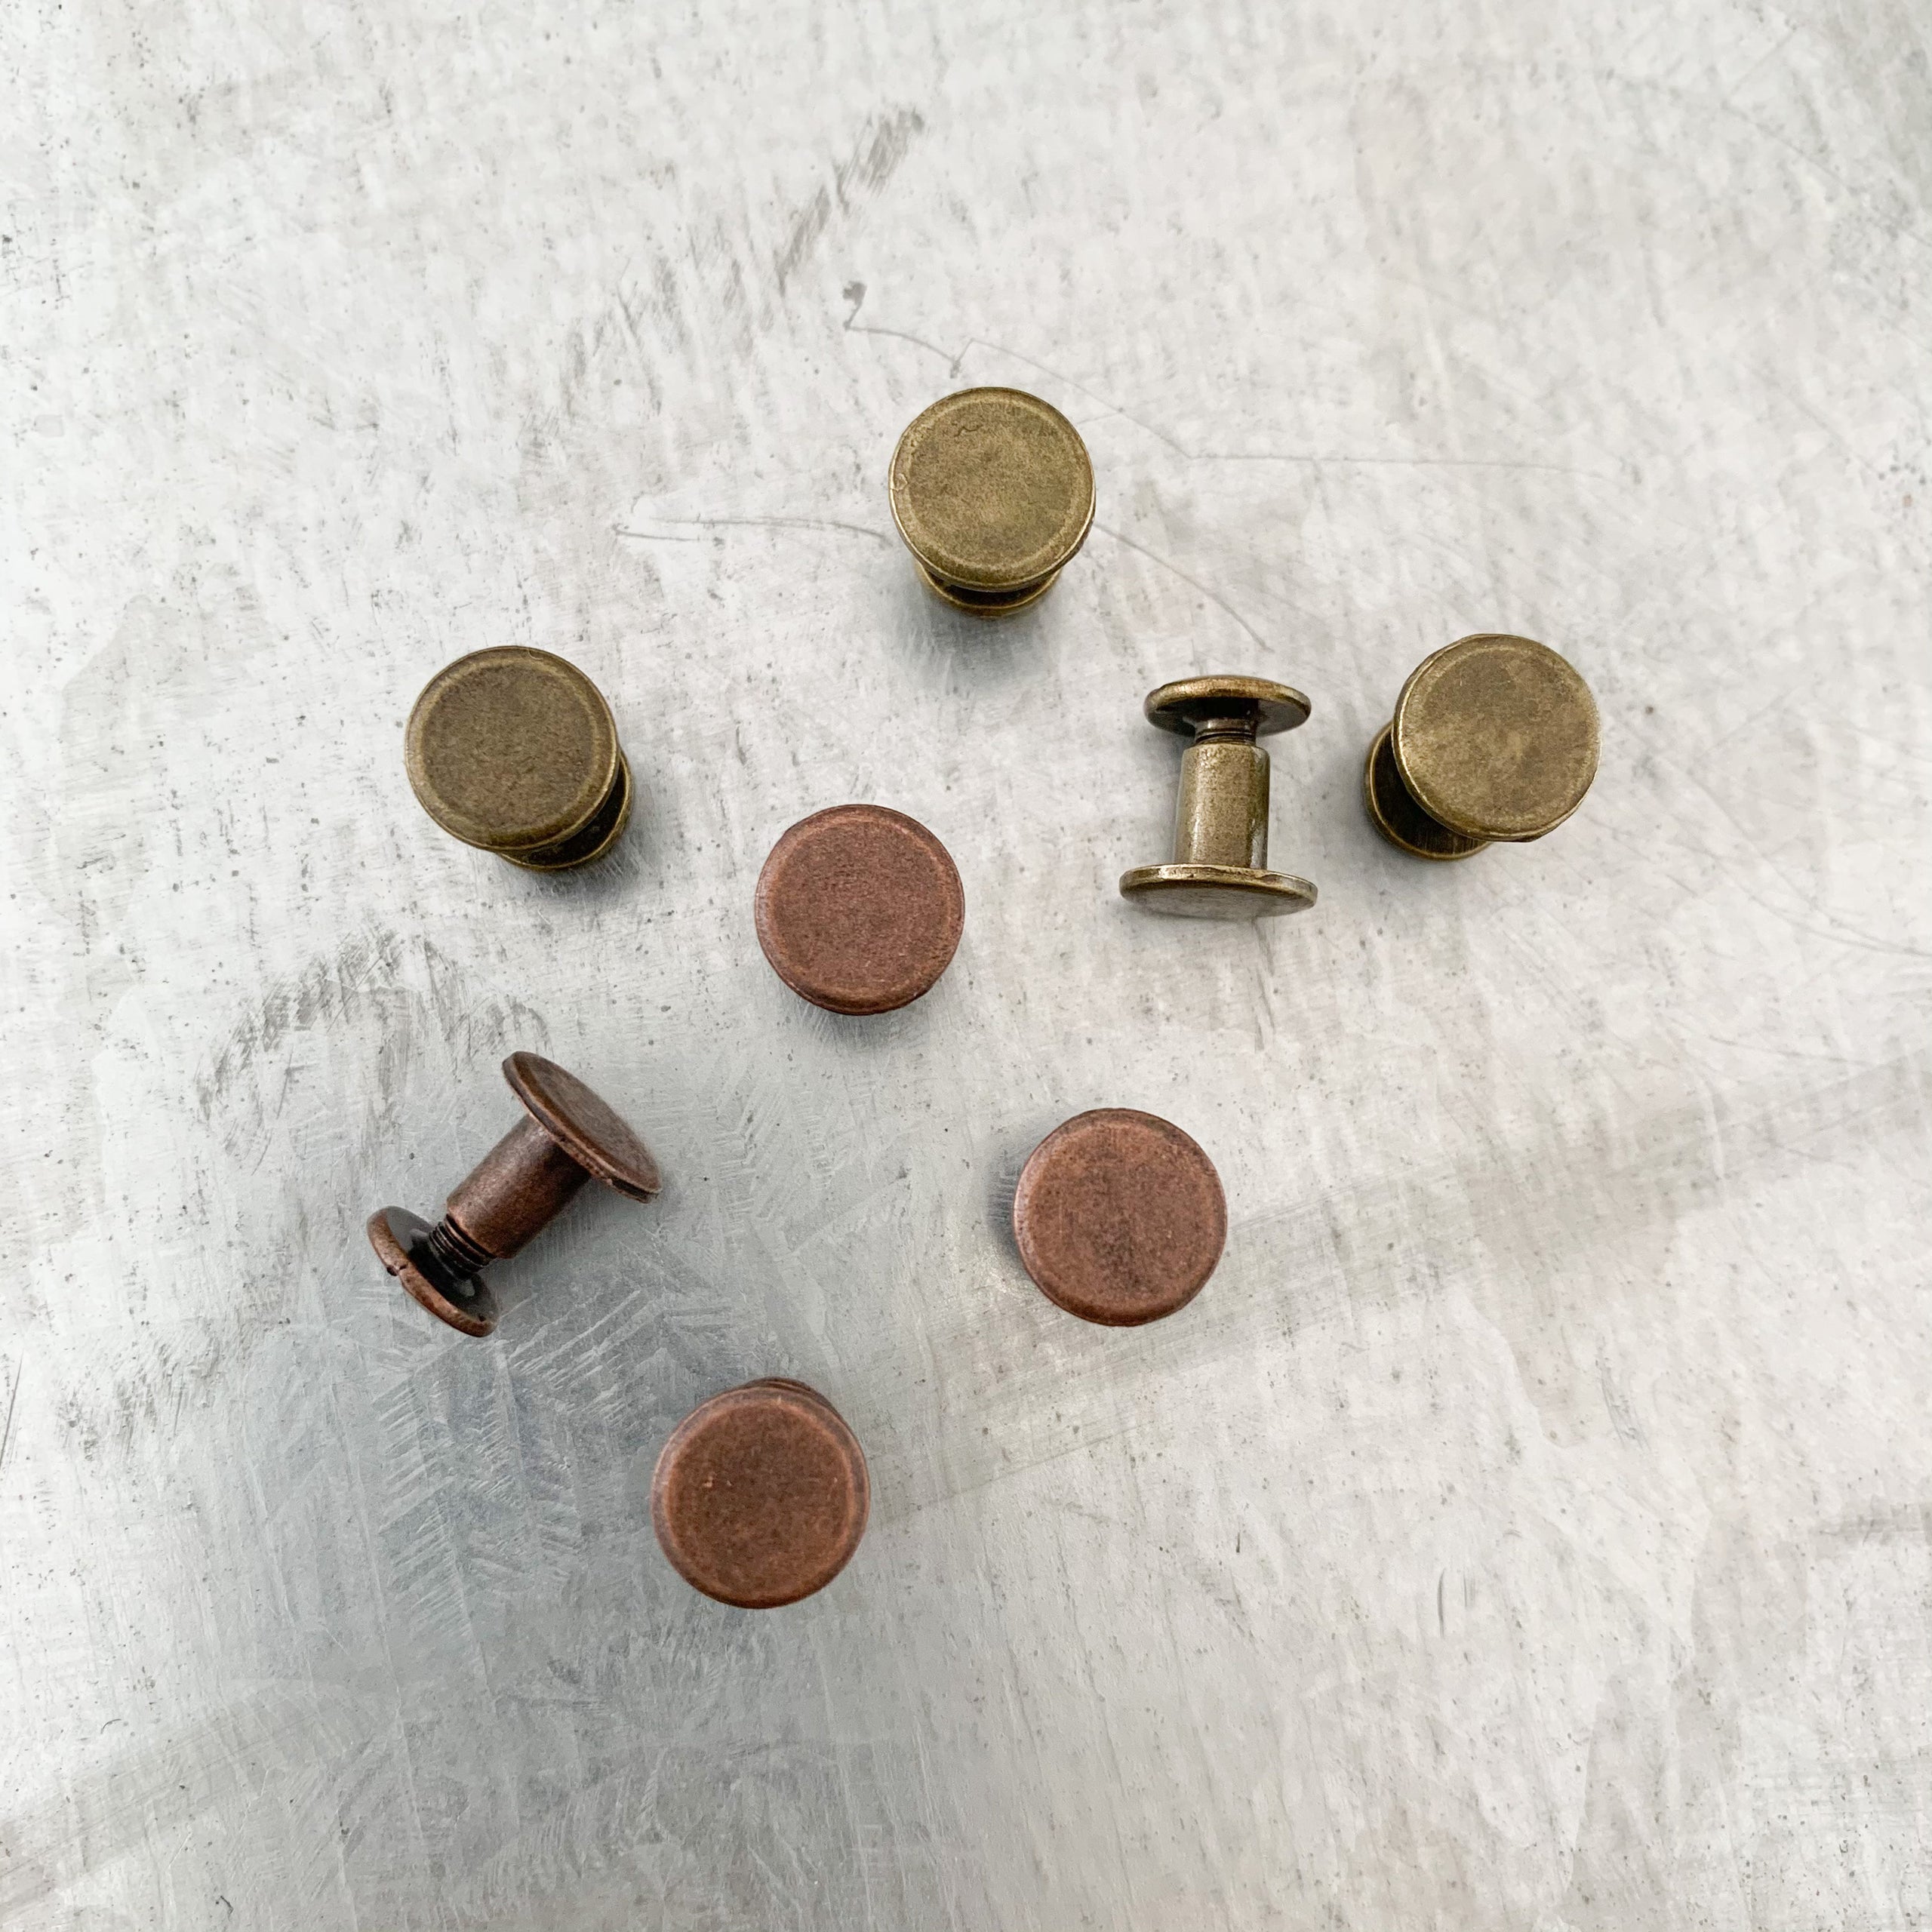 Belt add-on: Chicago screws instead of rivets (set of 2)